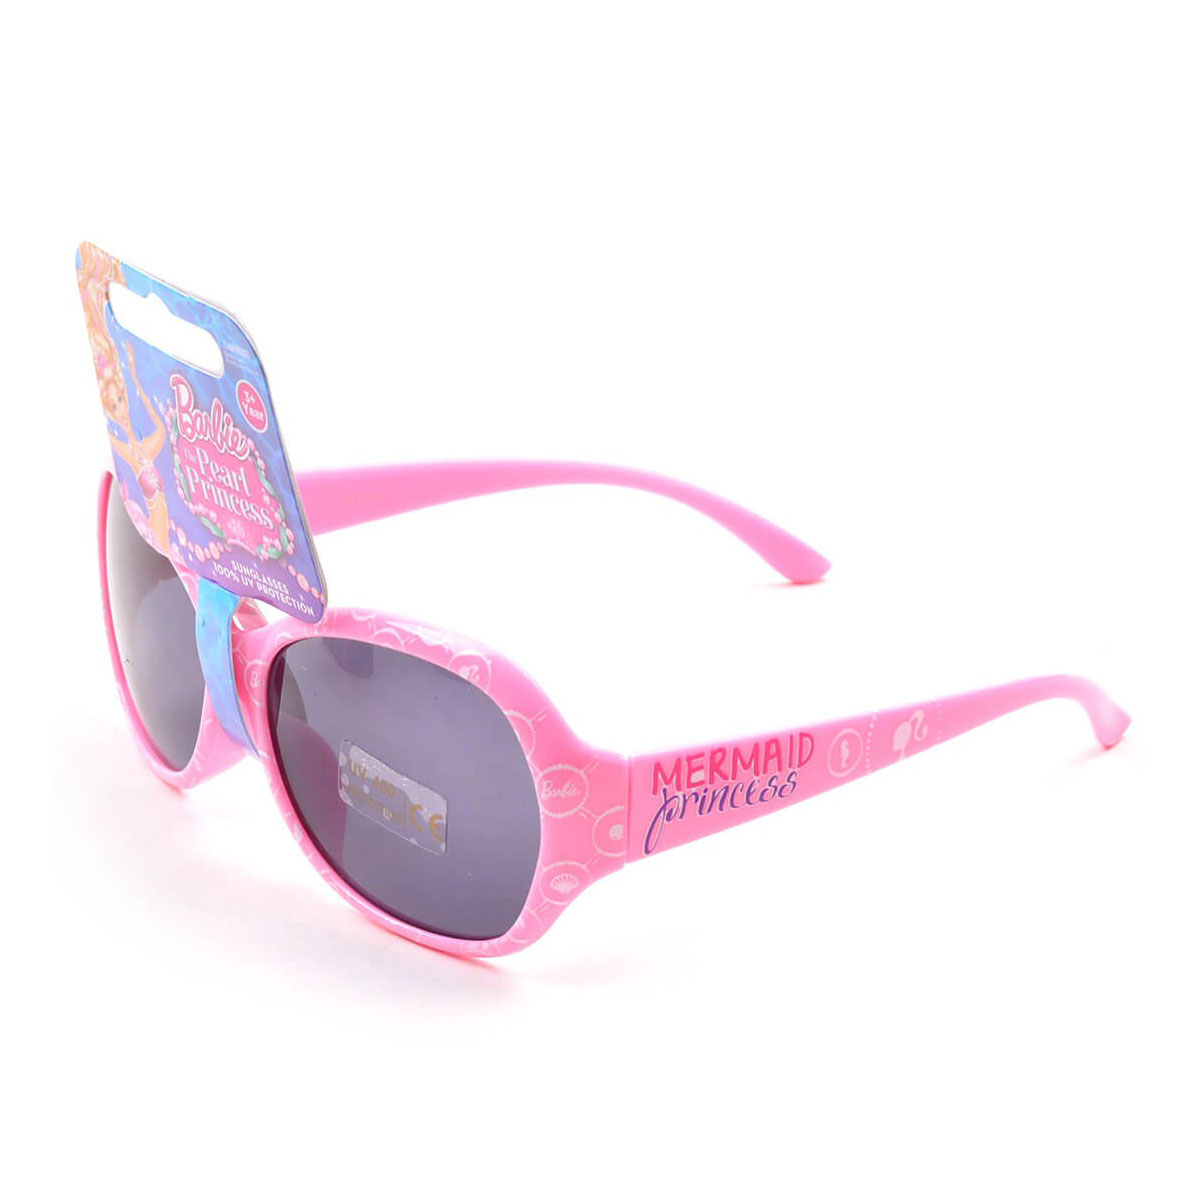 My Baby Excels Barbie Mermaid Princess Wrap Sunglasses - Pink